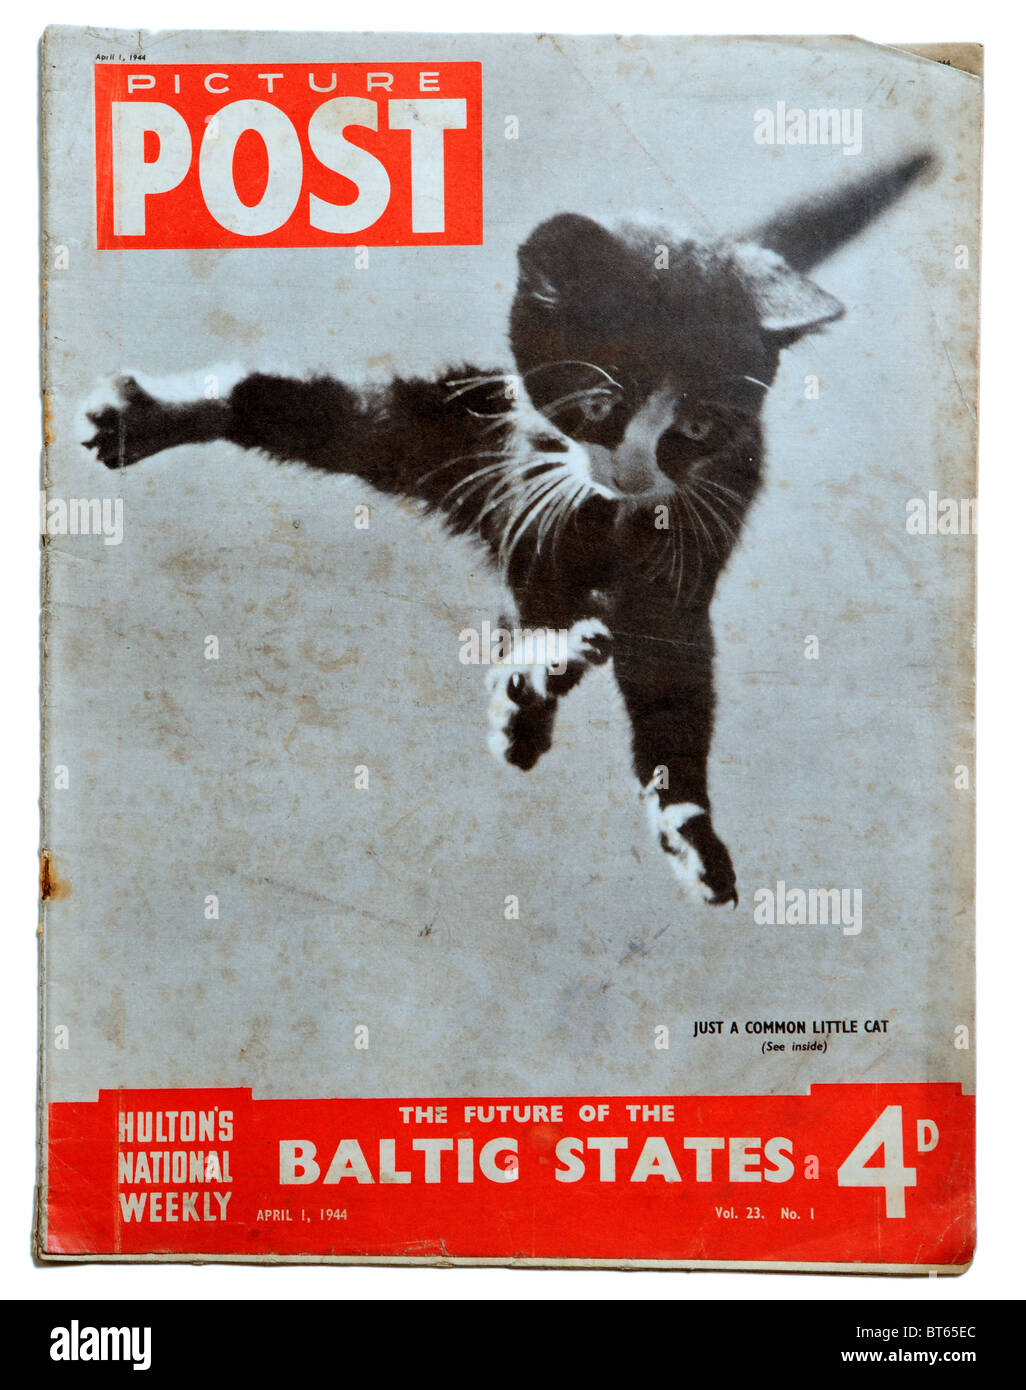 1 avril 1944 cat kitten battant relevant Picture Post photojournalistique éminent magazine publié Royaume-uni 1938 1957 pi. Banque D'Images